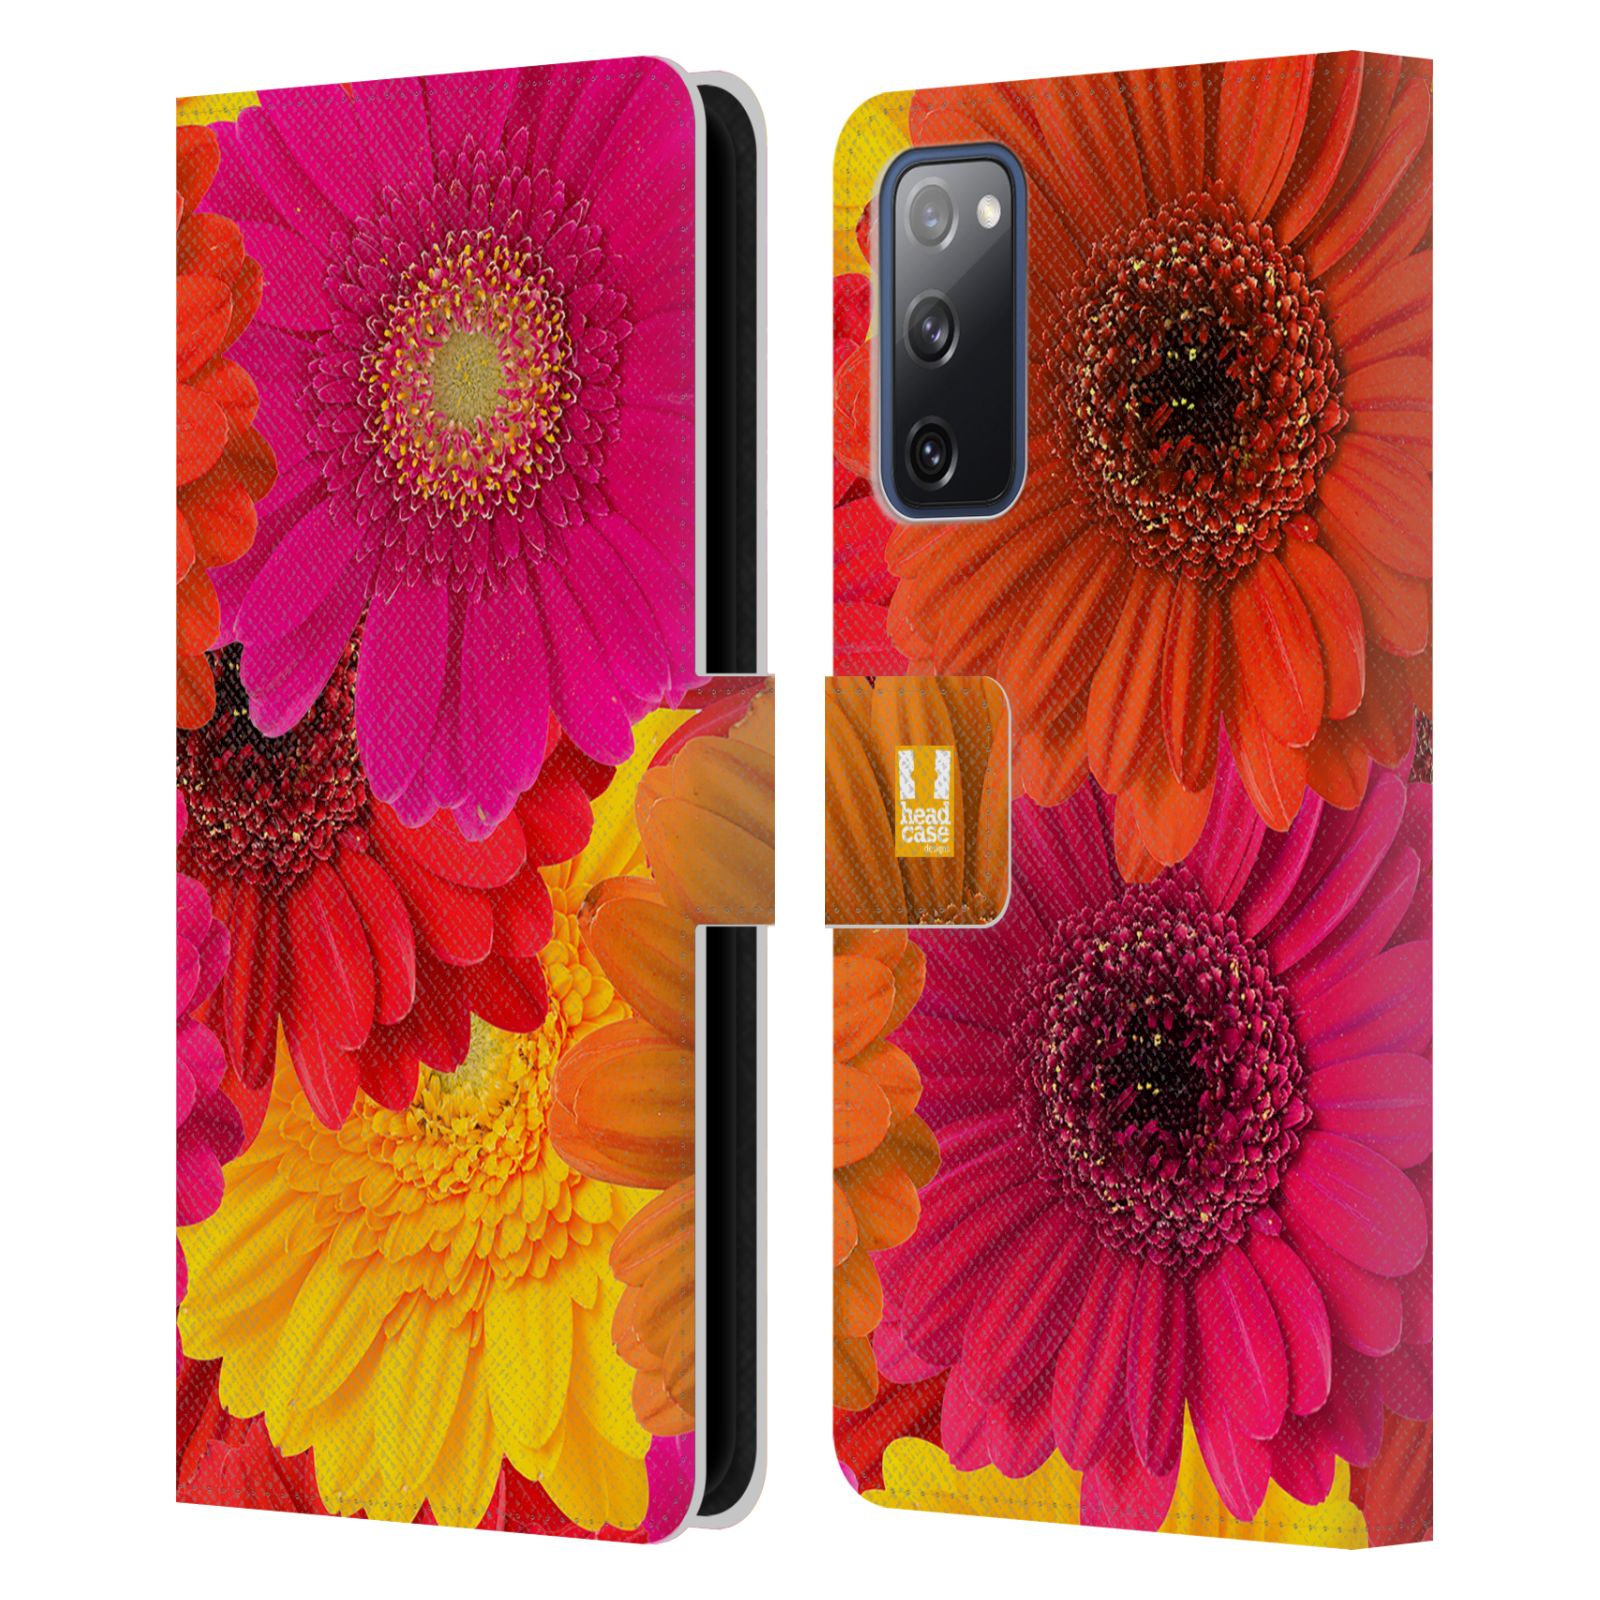 Pouzdro HEAD CASE na mobil Samsung Galaxy S20 FE / S20 FE 5G květy foto fialová, oranžová GERBERA